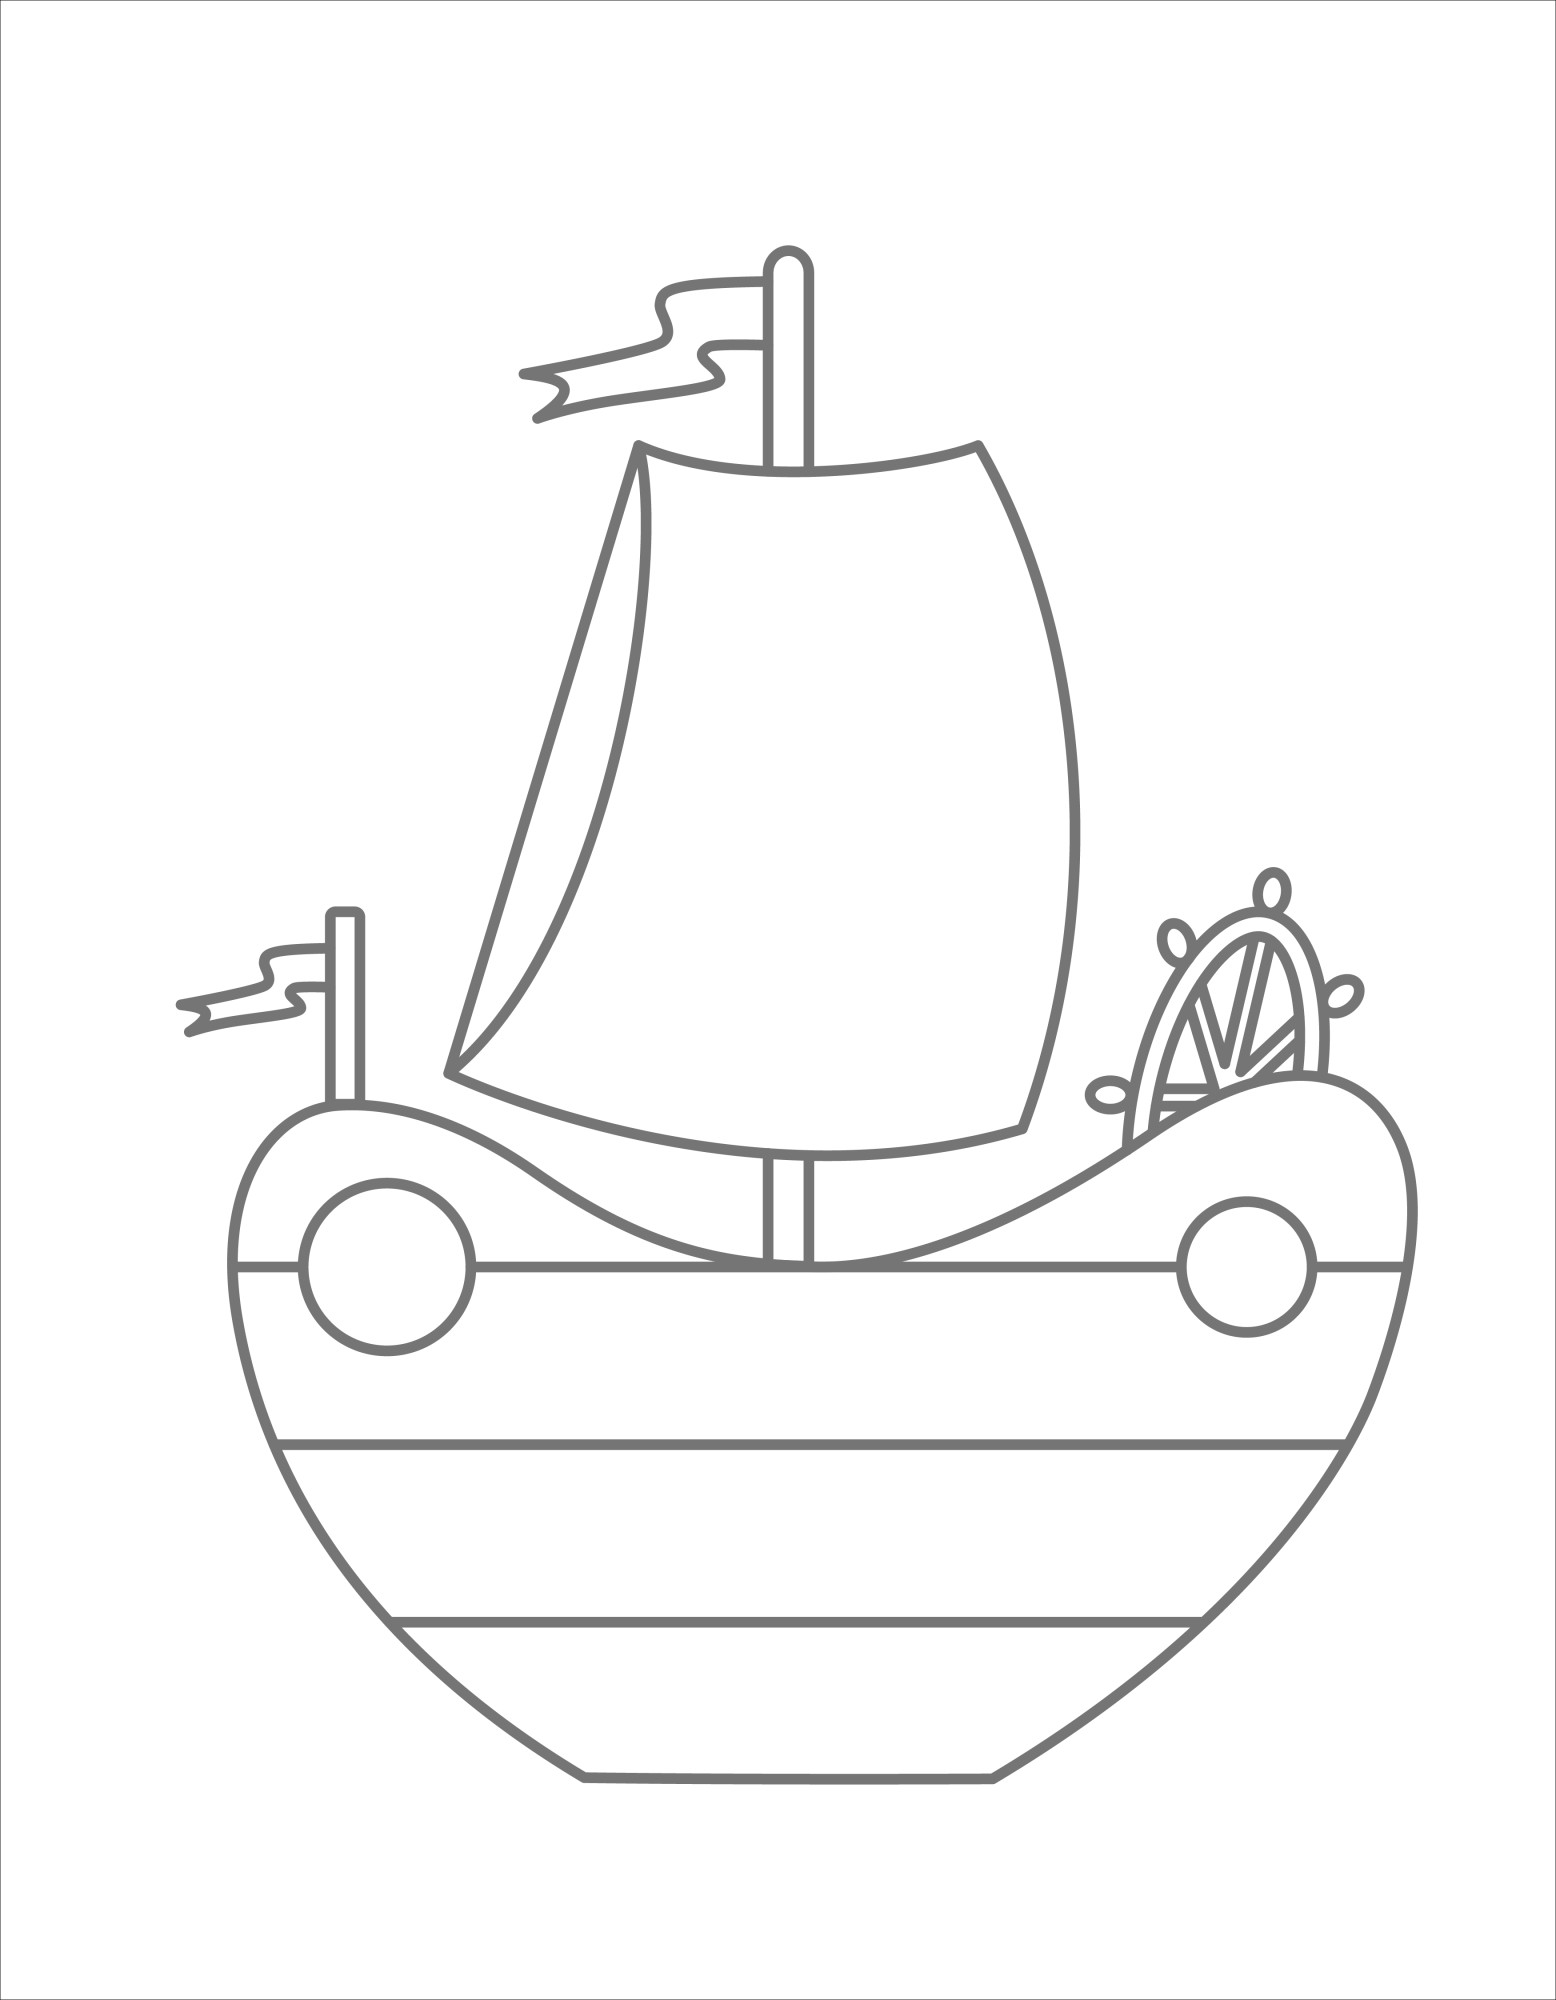 Раскраска для детей: игрушечный корабль «Синий океан и белые паруса»